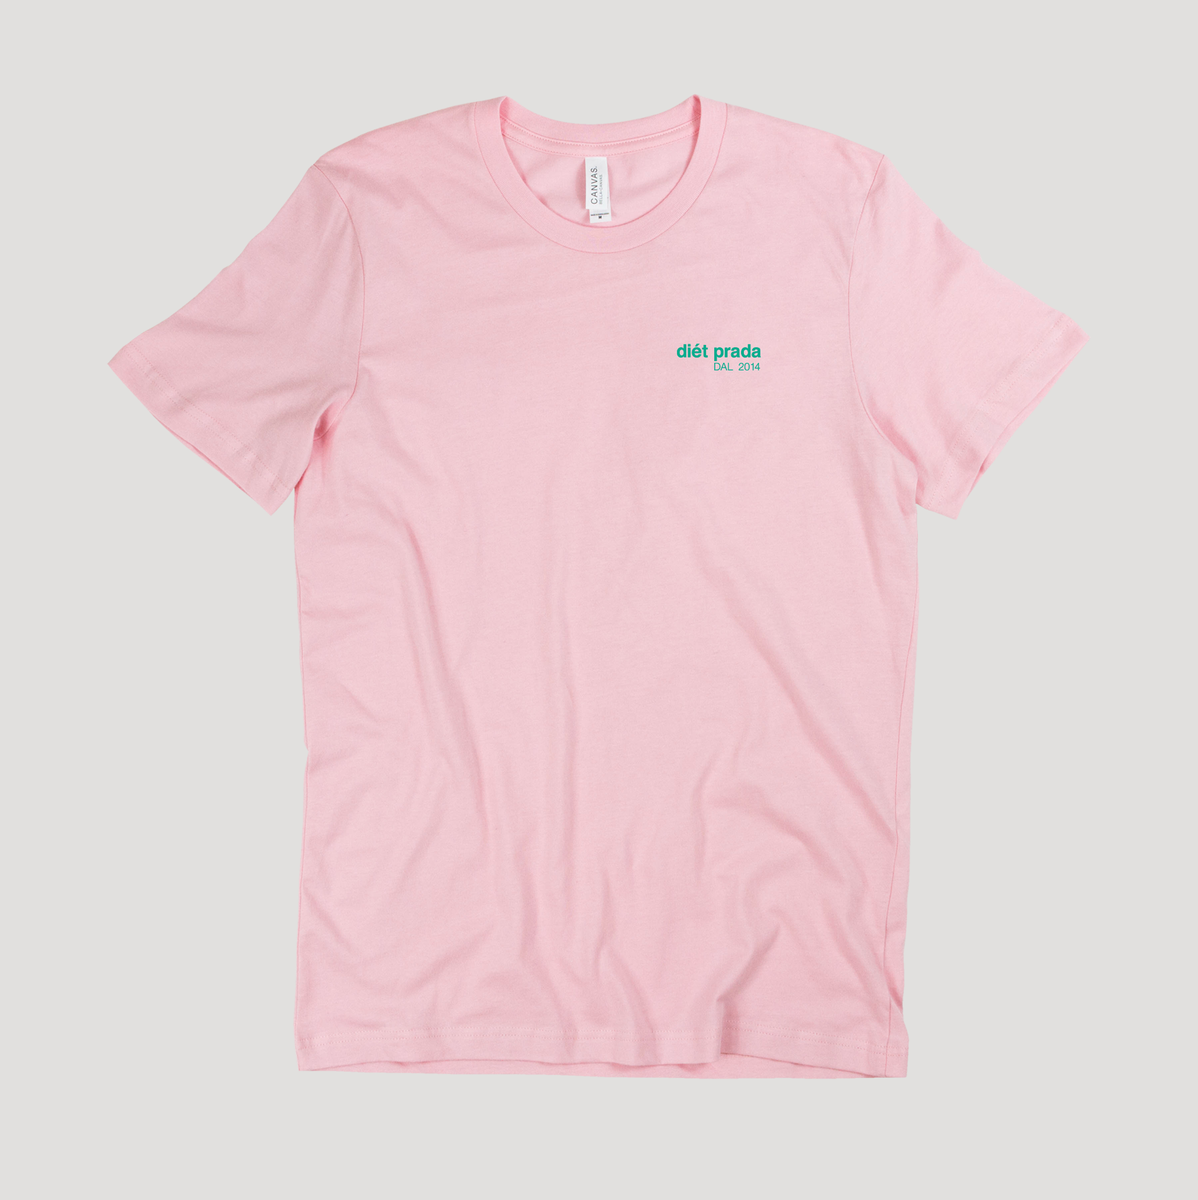 prada pink shirt